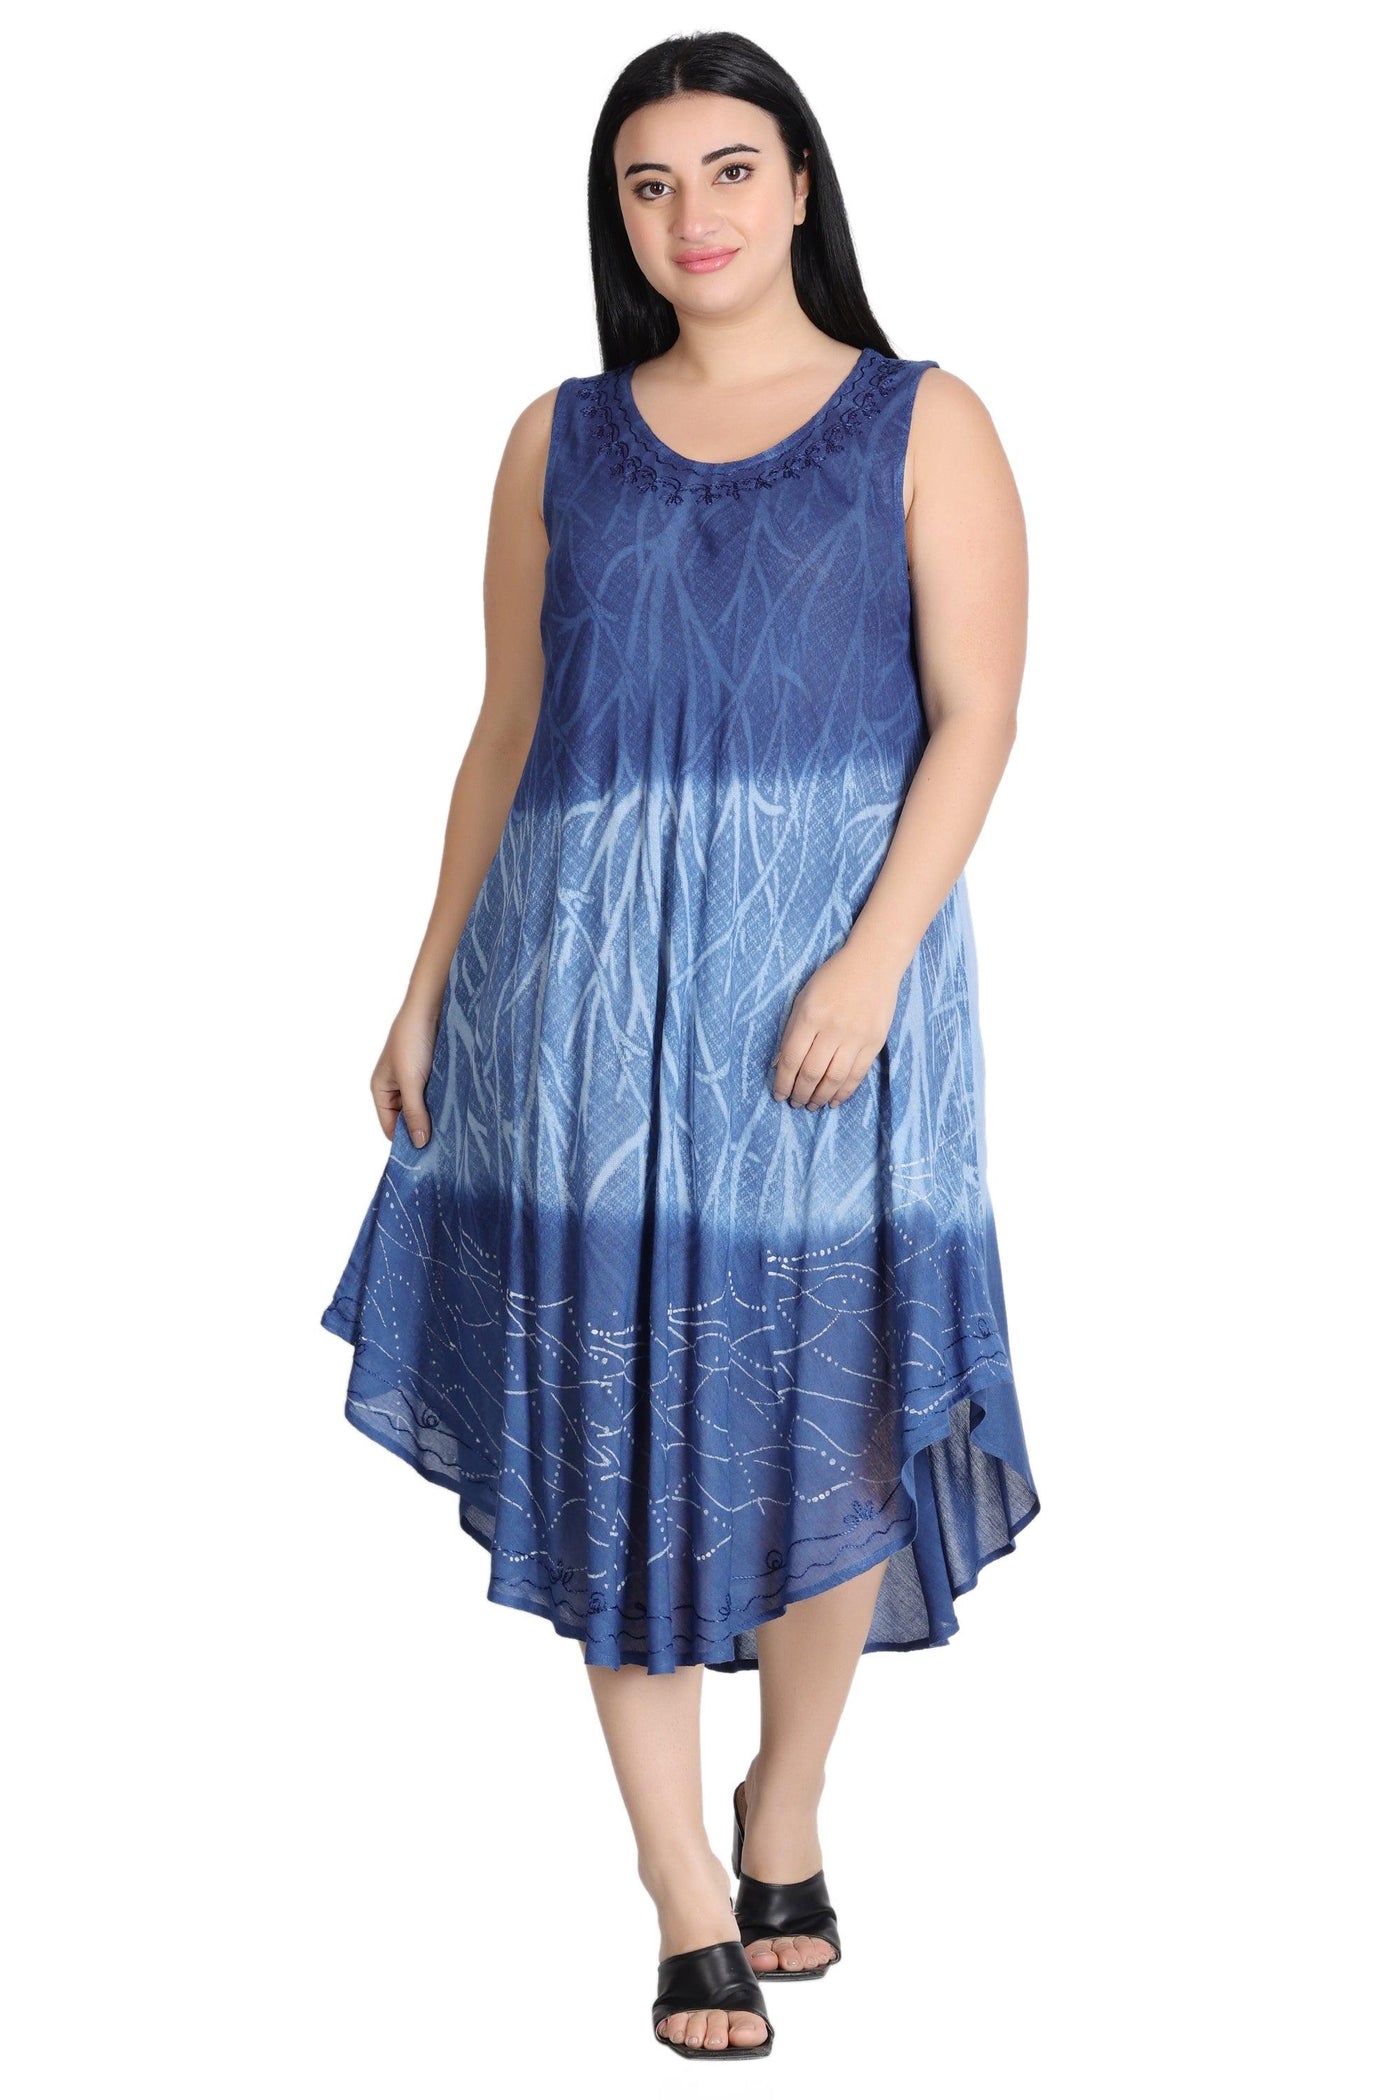 Tri-Layer Tie Dye Dress 482159R  - Advance Apparels Inc